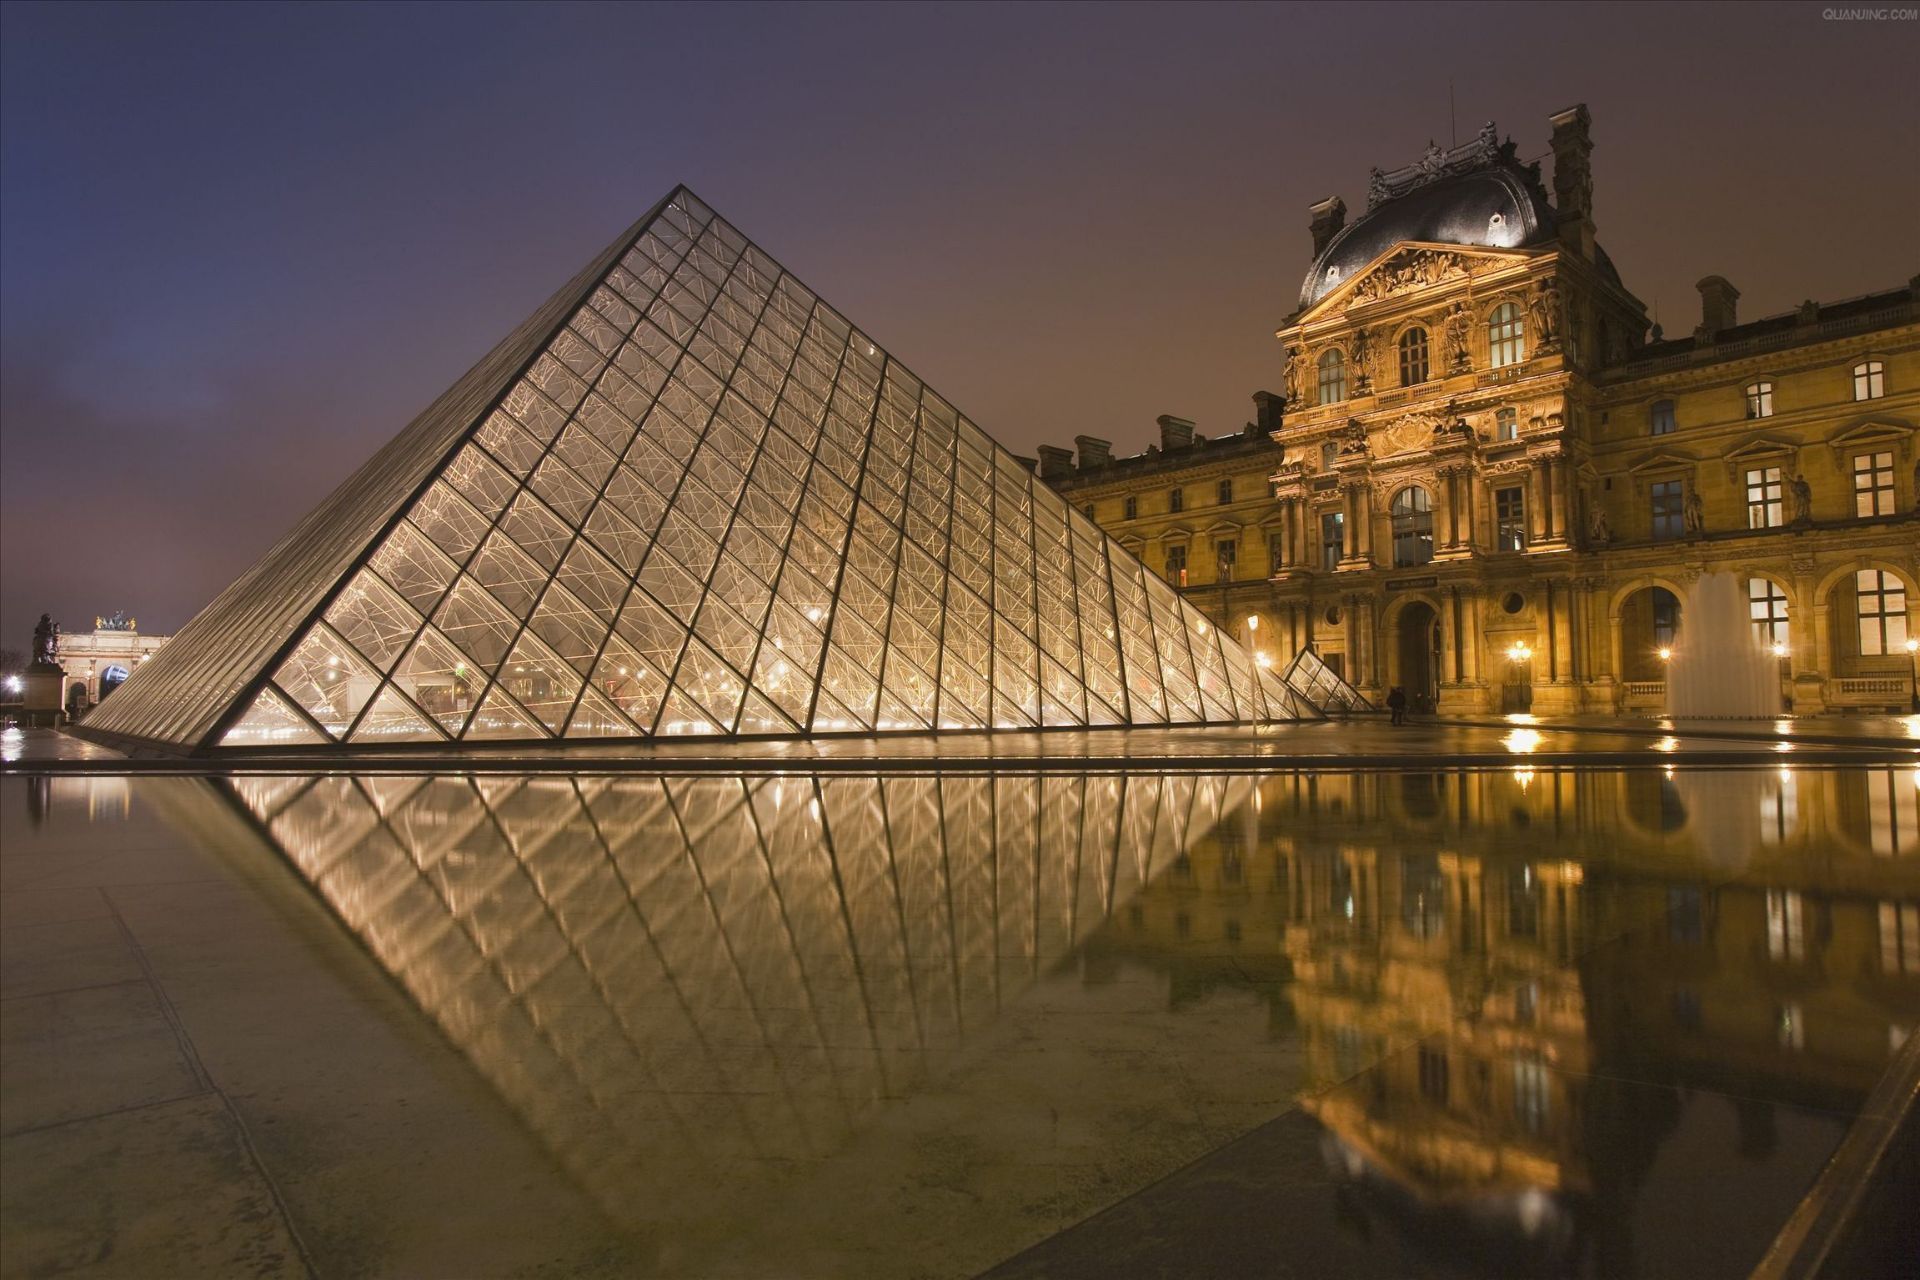 【携程攻略】巴黎卢浮宫博物馆景点,卢浮宫是法国最大的王宫建筑之一, 位于首都巴黎塞纳河畔、巴黎歌剧院…